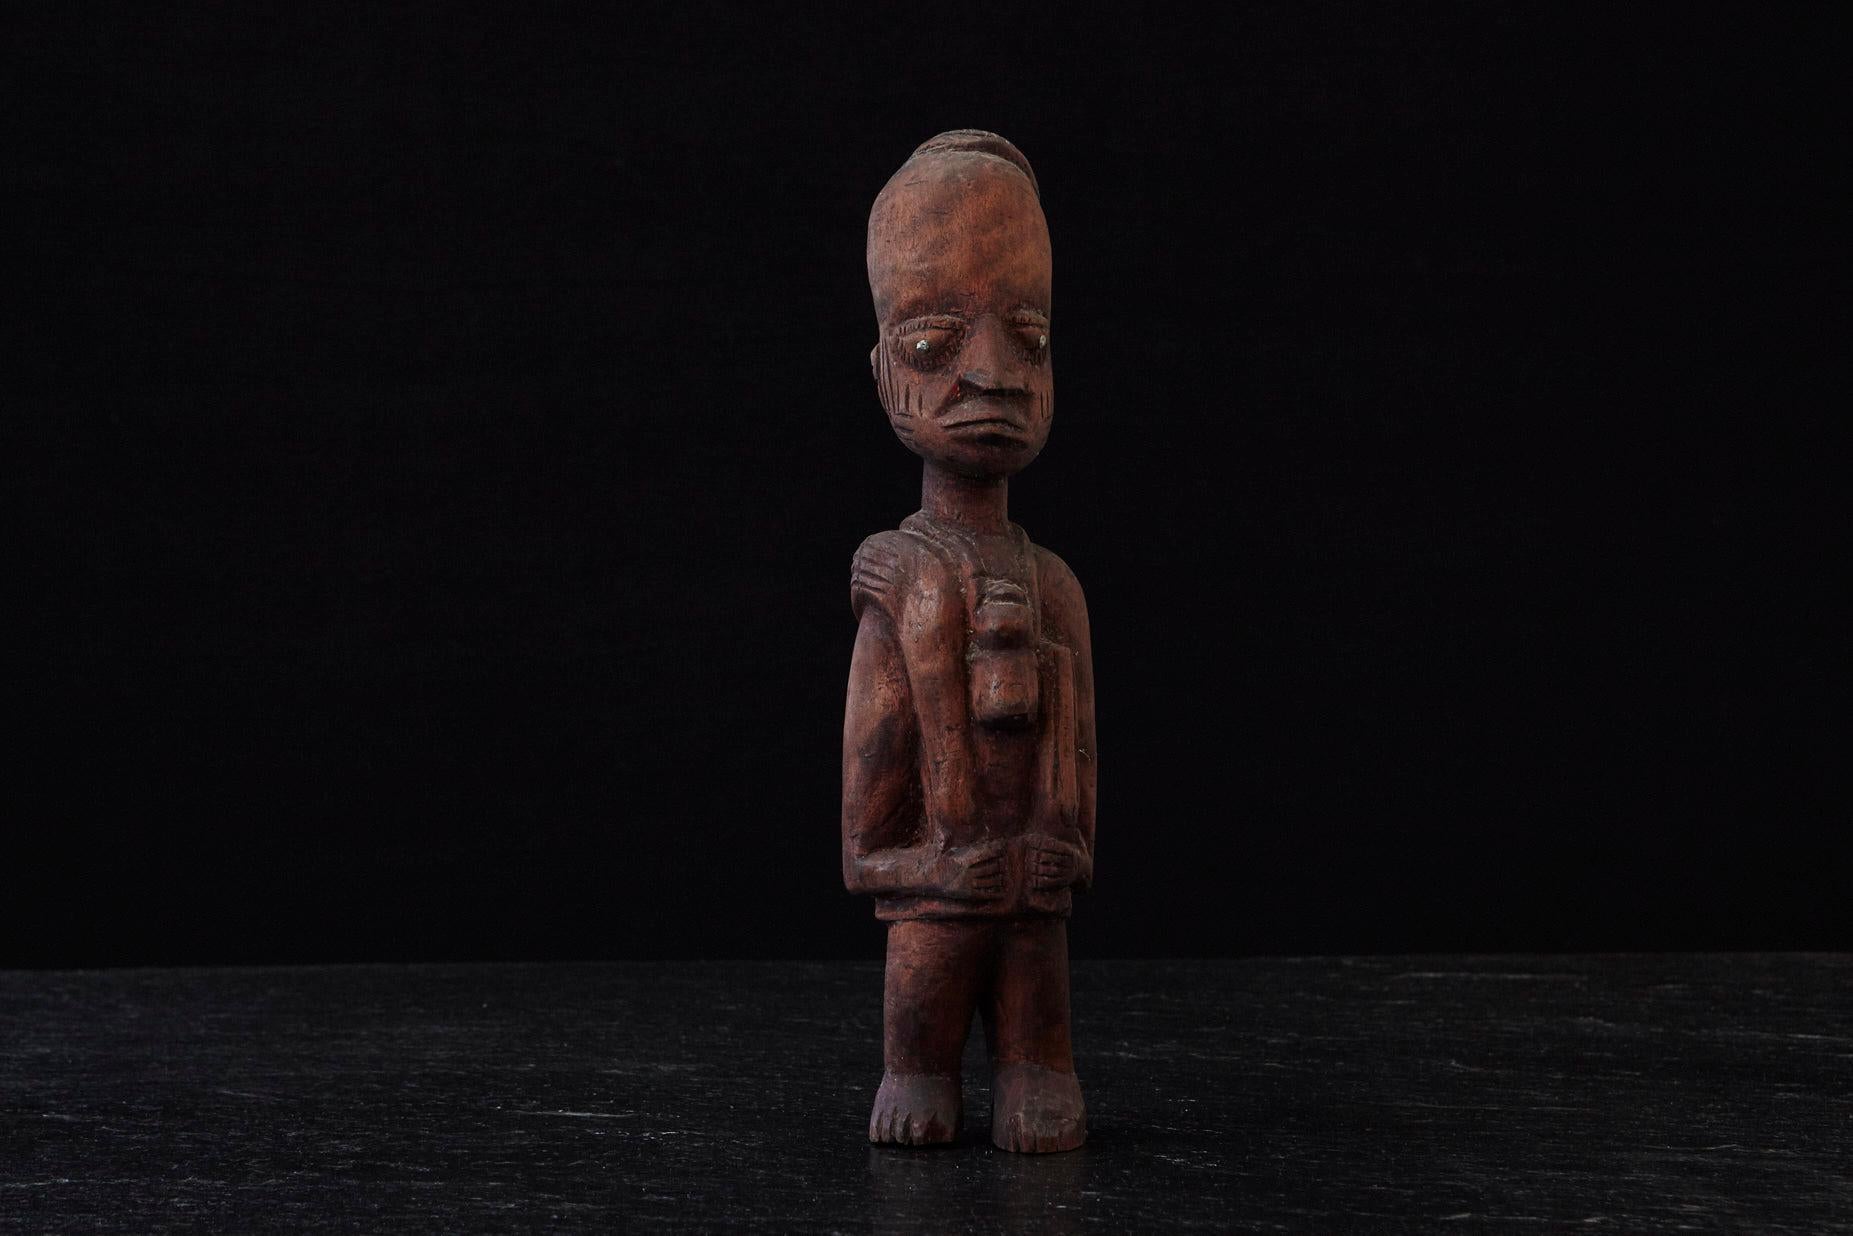 Große handgeschnitzte Holzstatue eines Ju-Ju-Mannes, hergestellt vom Volk der Egba in Abeokuta, Ogun State (Teil von Nigeria), um 1940.
Die Pupillen sind aus Nägeln gefertigt, was das Aussehen und den Ausdruck des Ju-Ju-Mannes noch verstärkt,